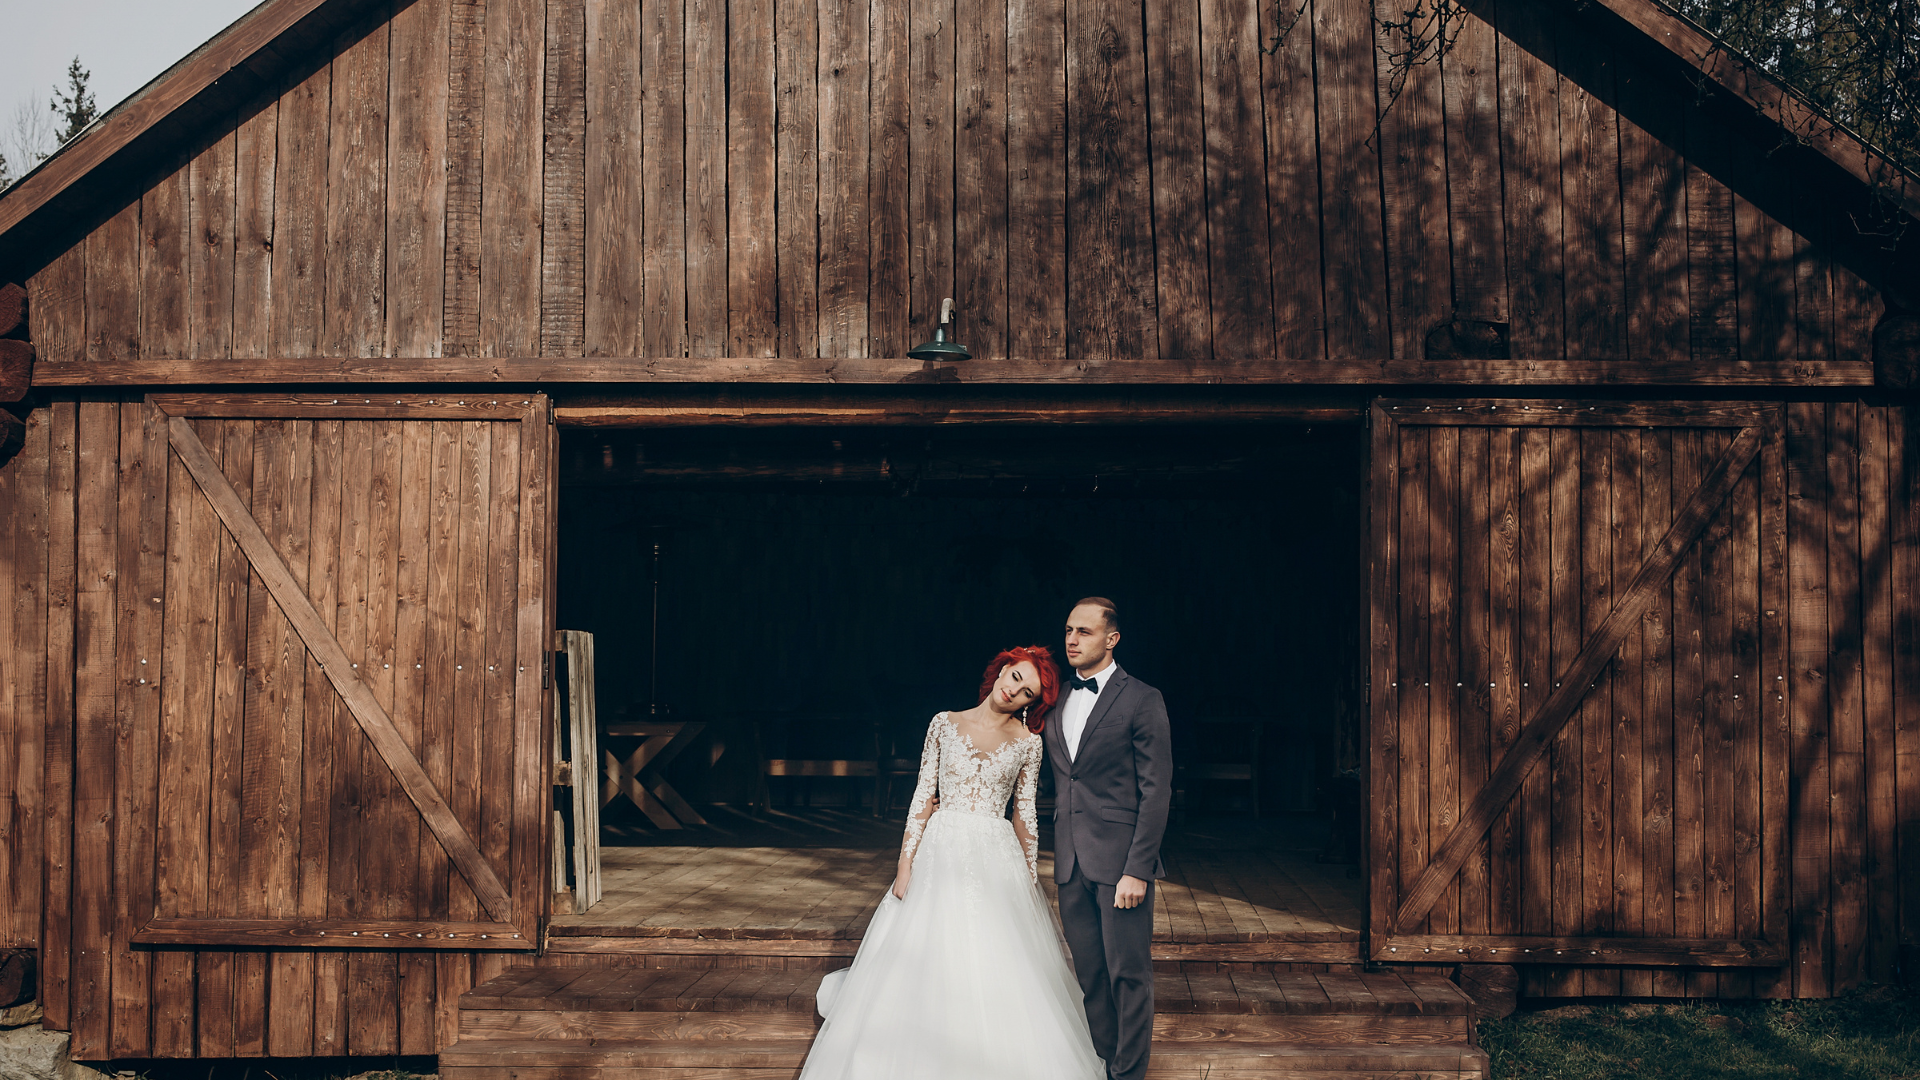 Láká vás stále populárnější trend svateb ve stodole? Moderní stodolu pro svatbu si snadno vyberete z naší široké nabídky svatebních míst.